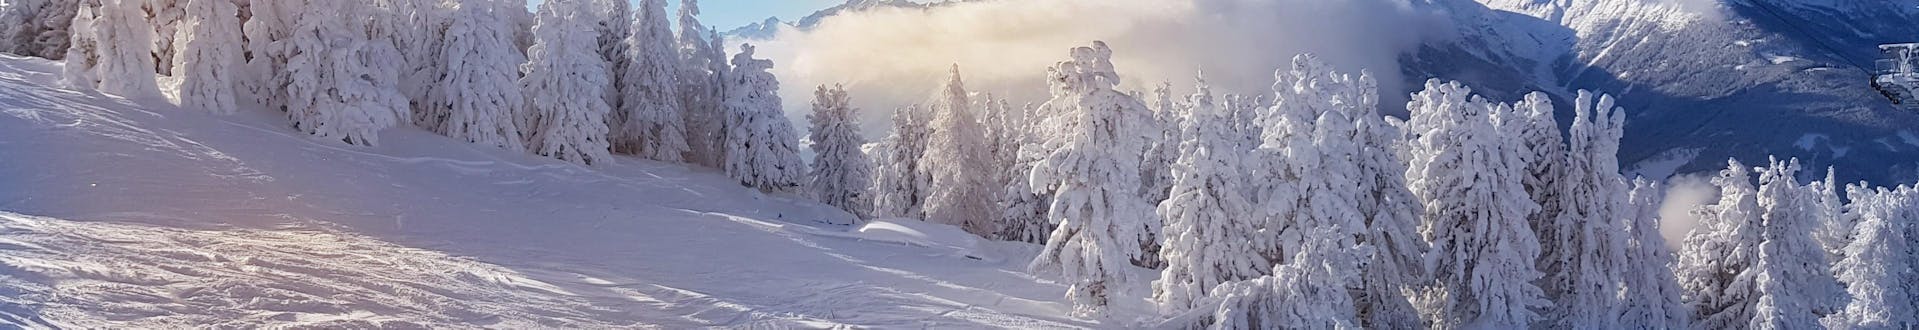 Skiër op de pistes van Igls, Oostenrijk bij de skilift.